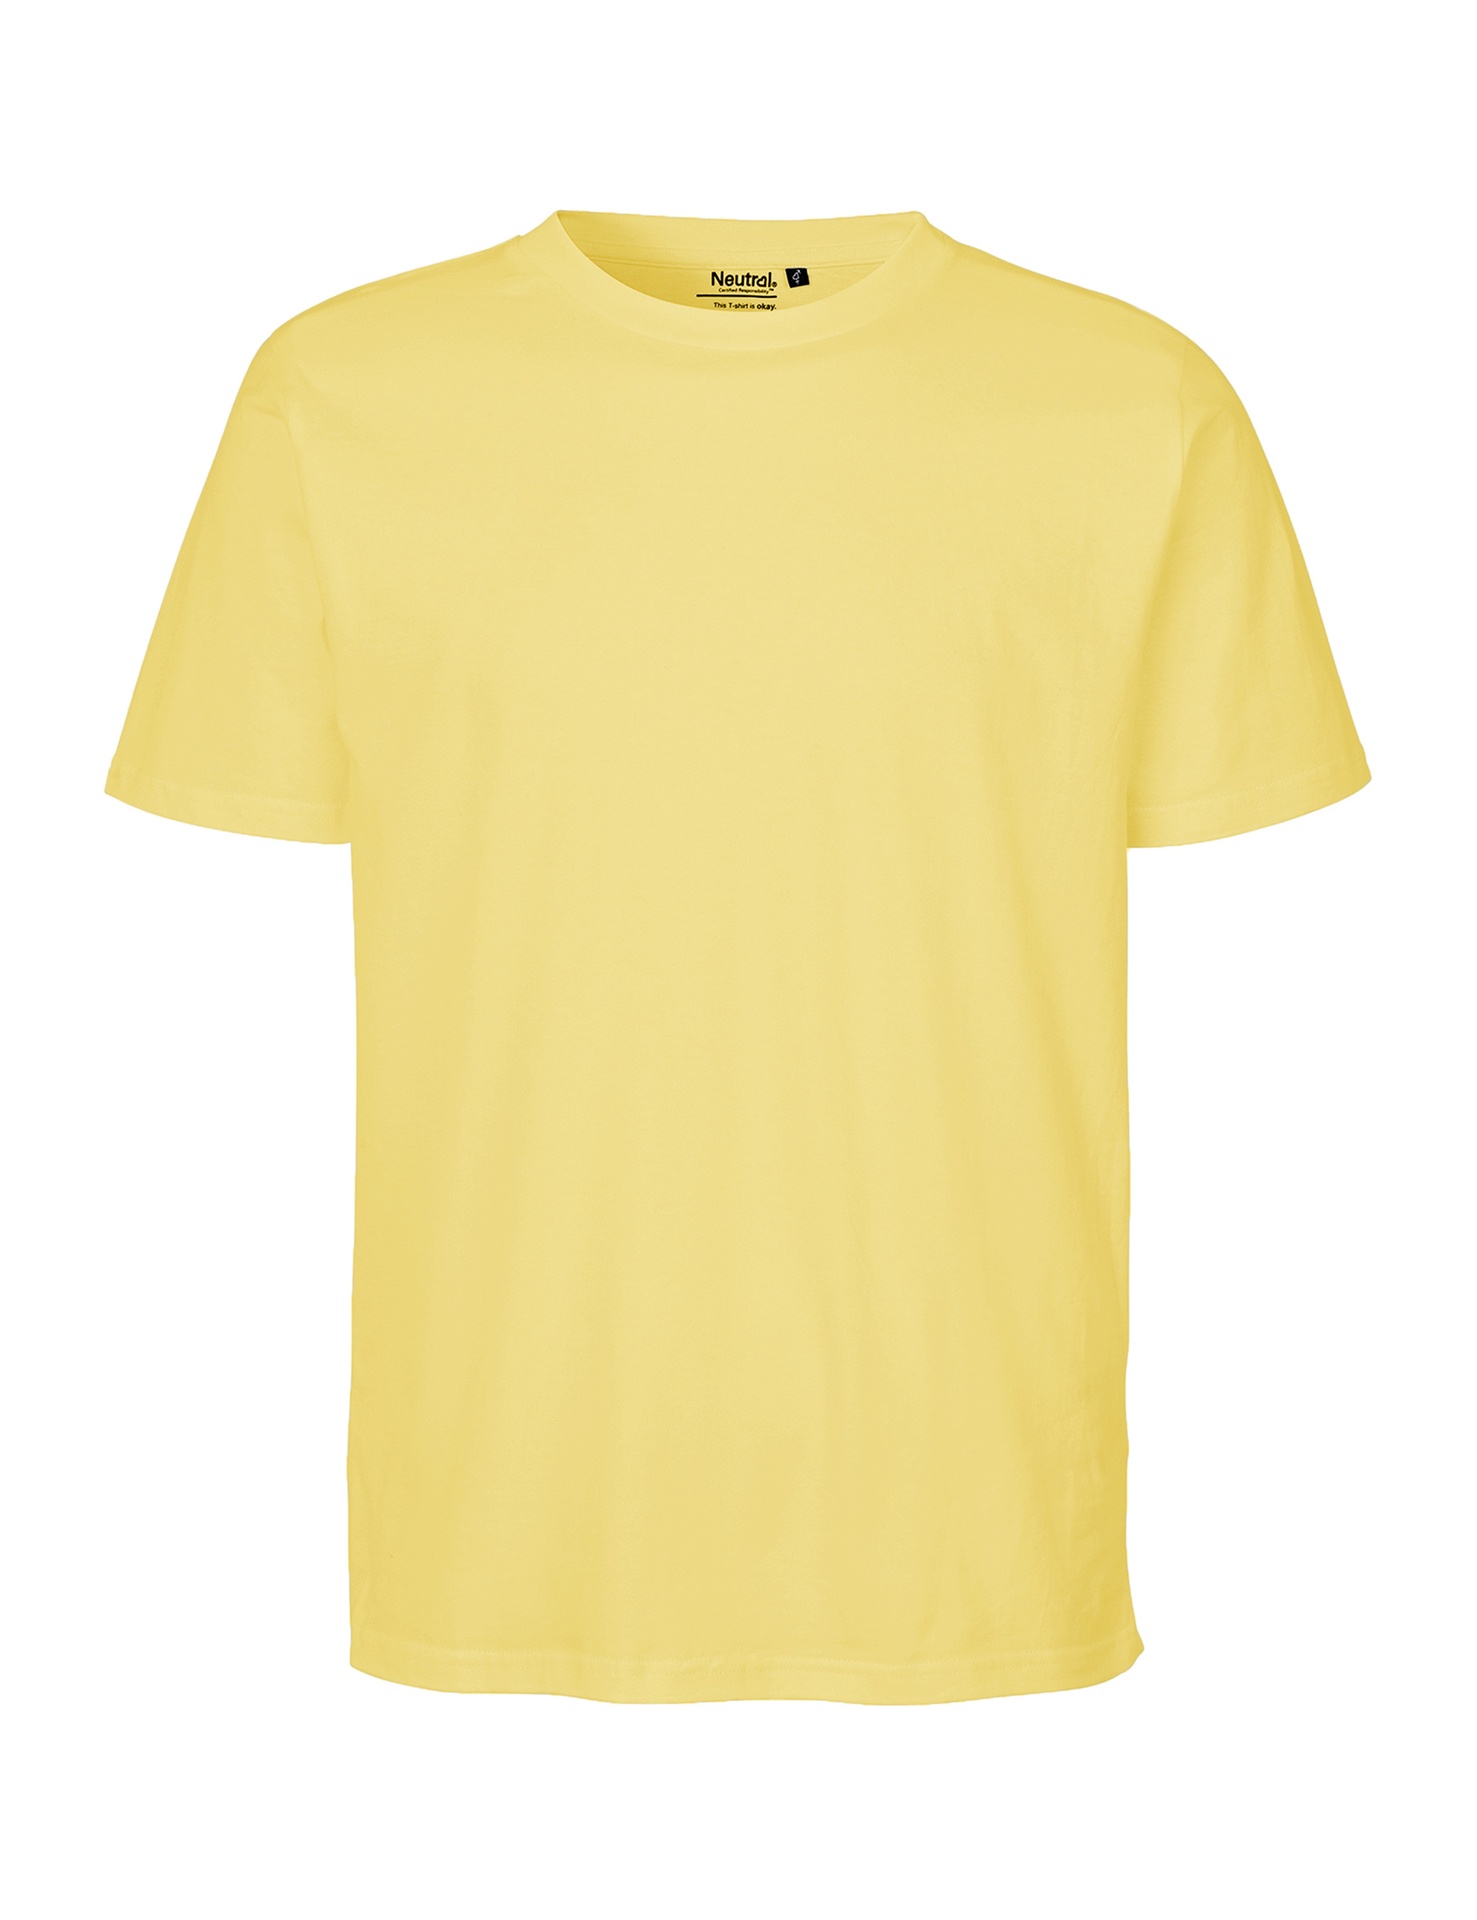 [PR/06527] Unisex Regular T-Shirt (S, Charcoal 06)